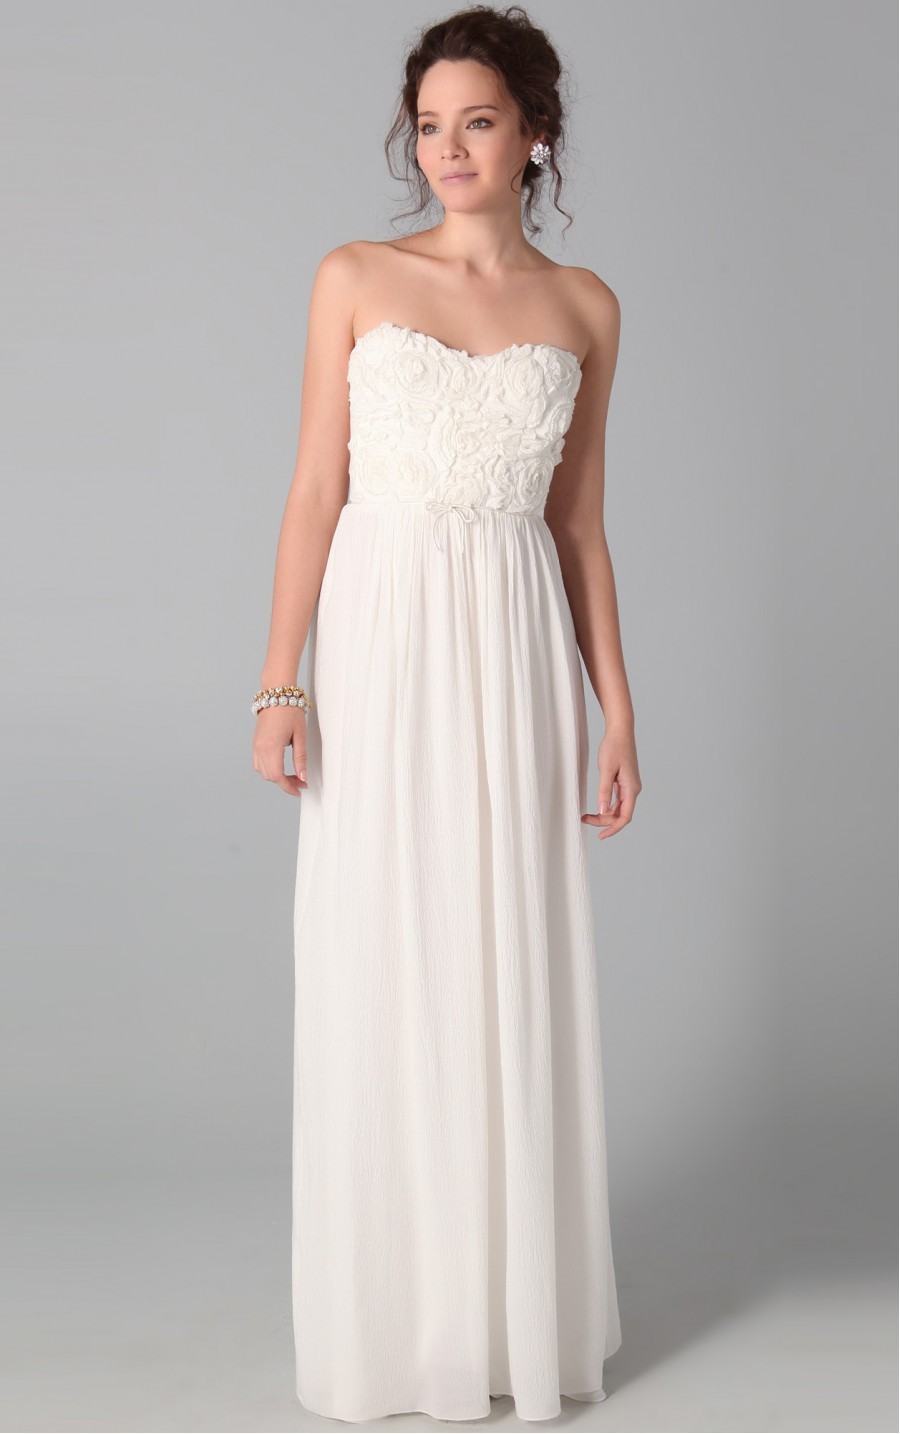 strapless-white-maxi-dress-white-strapless-dresses